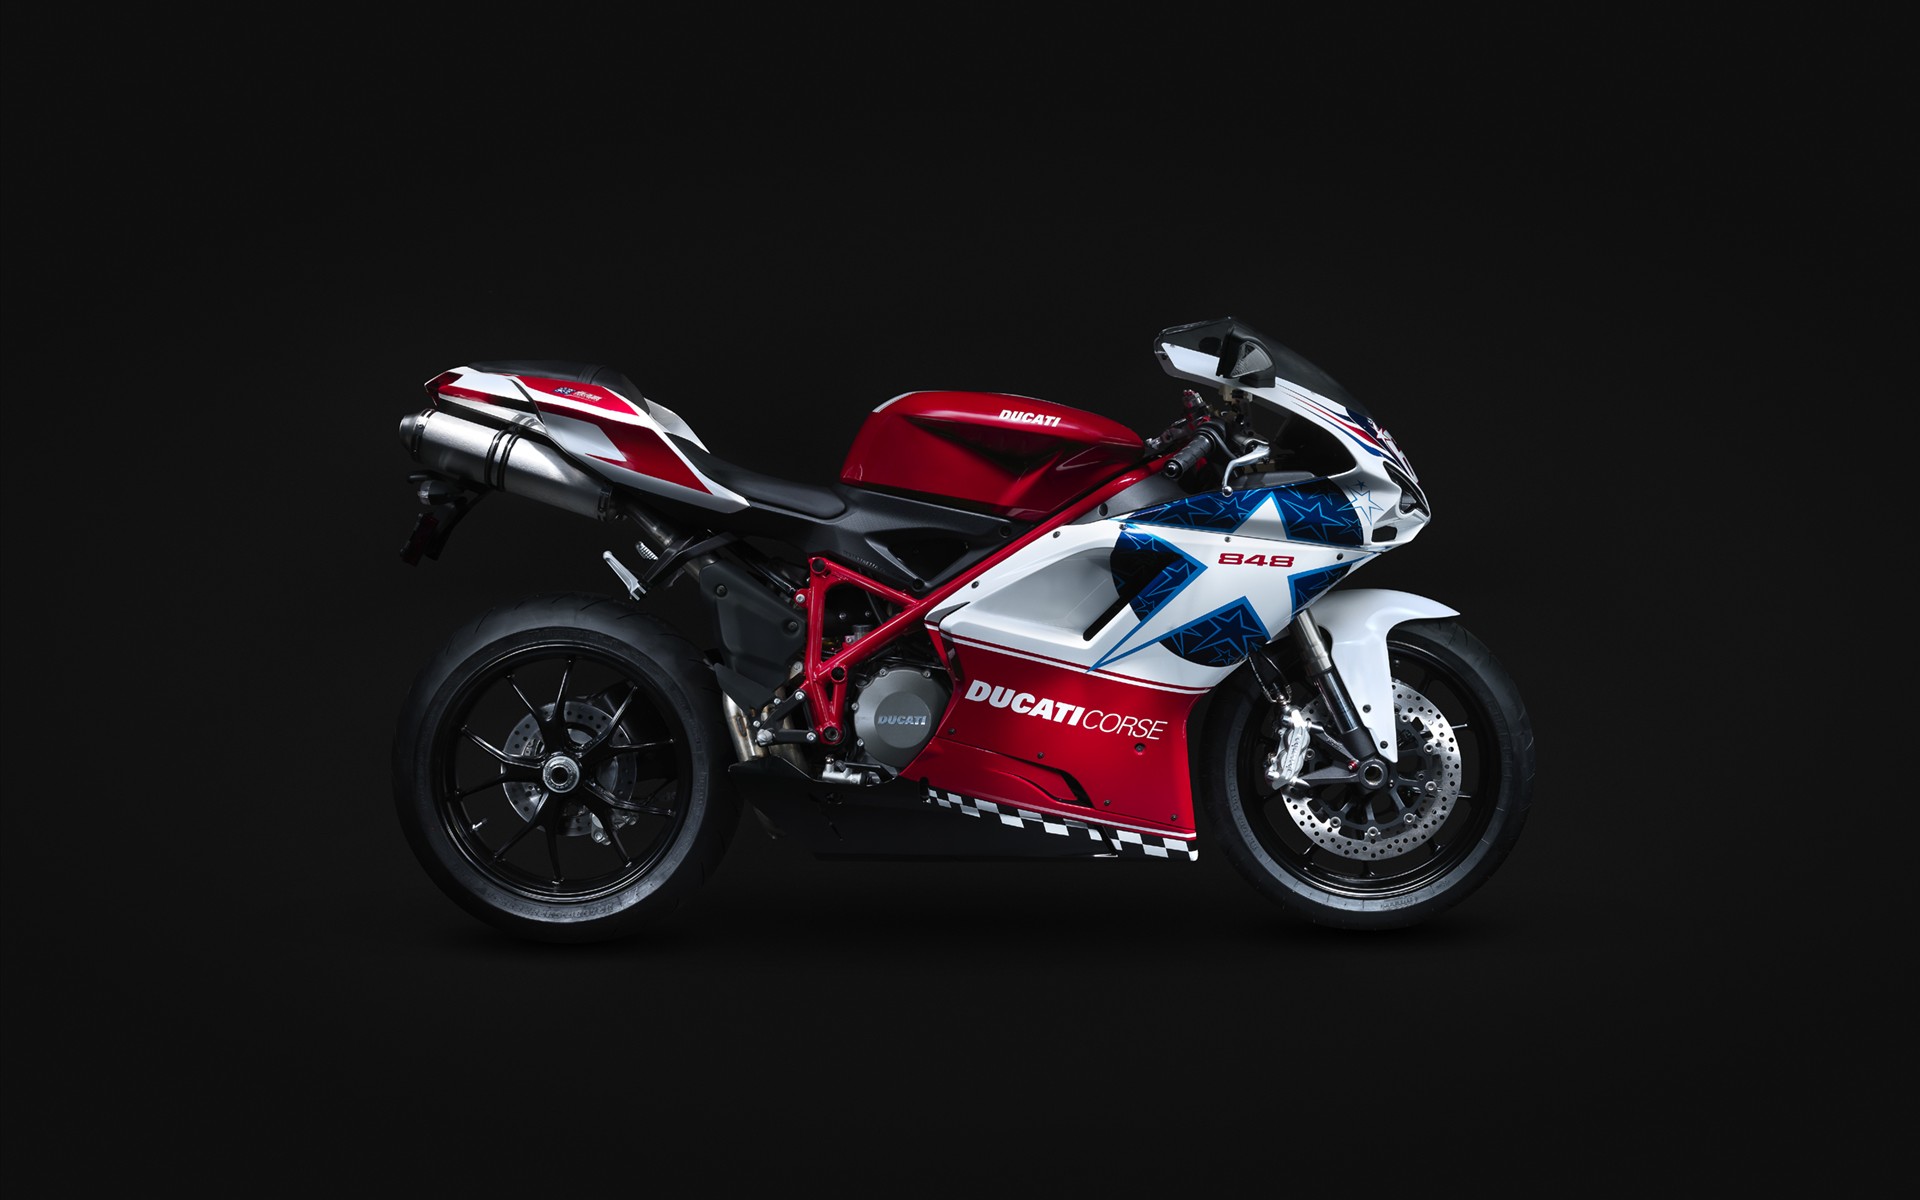 43+] Ducati Wallpaper Downloads - WallpaperSafari